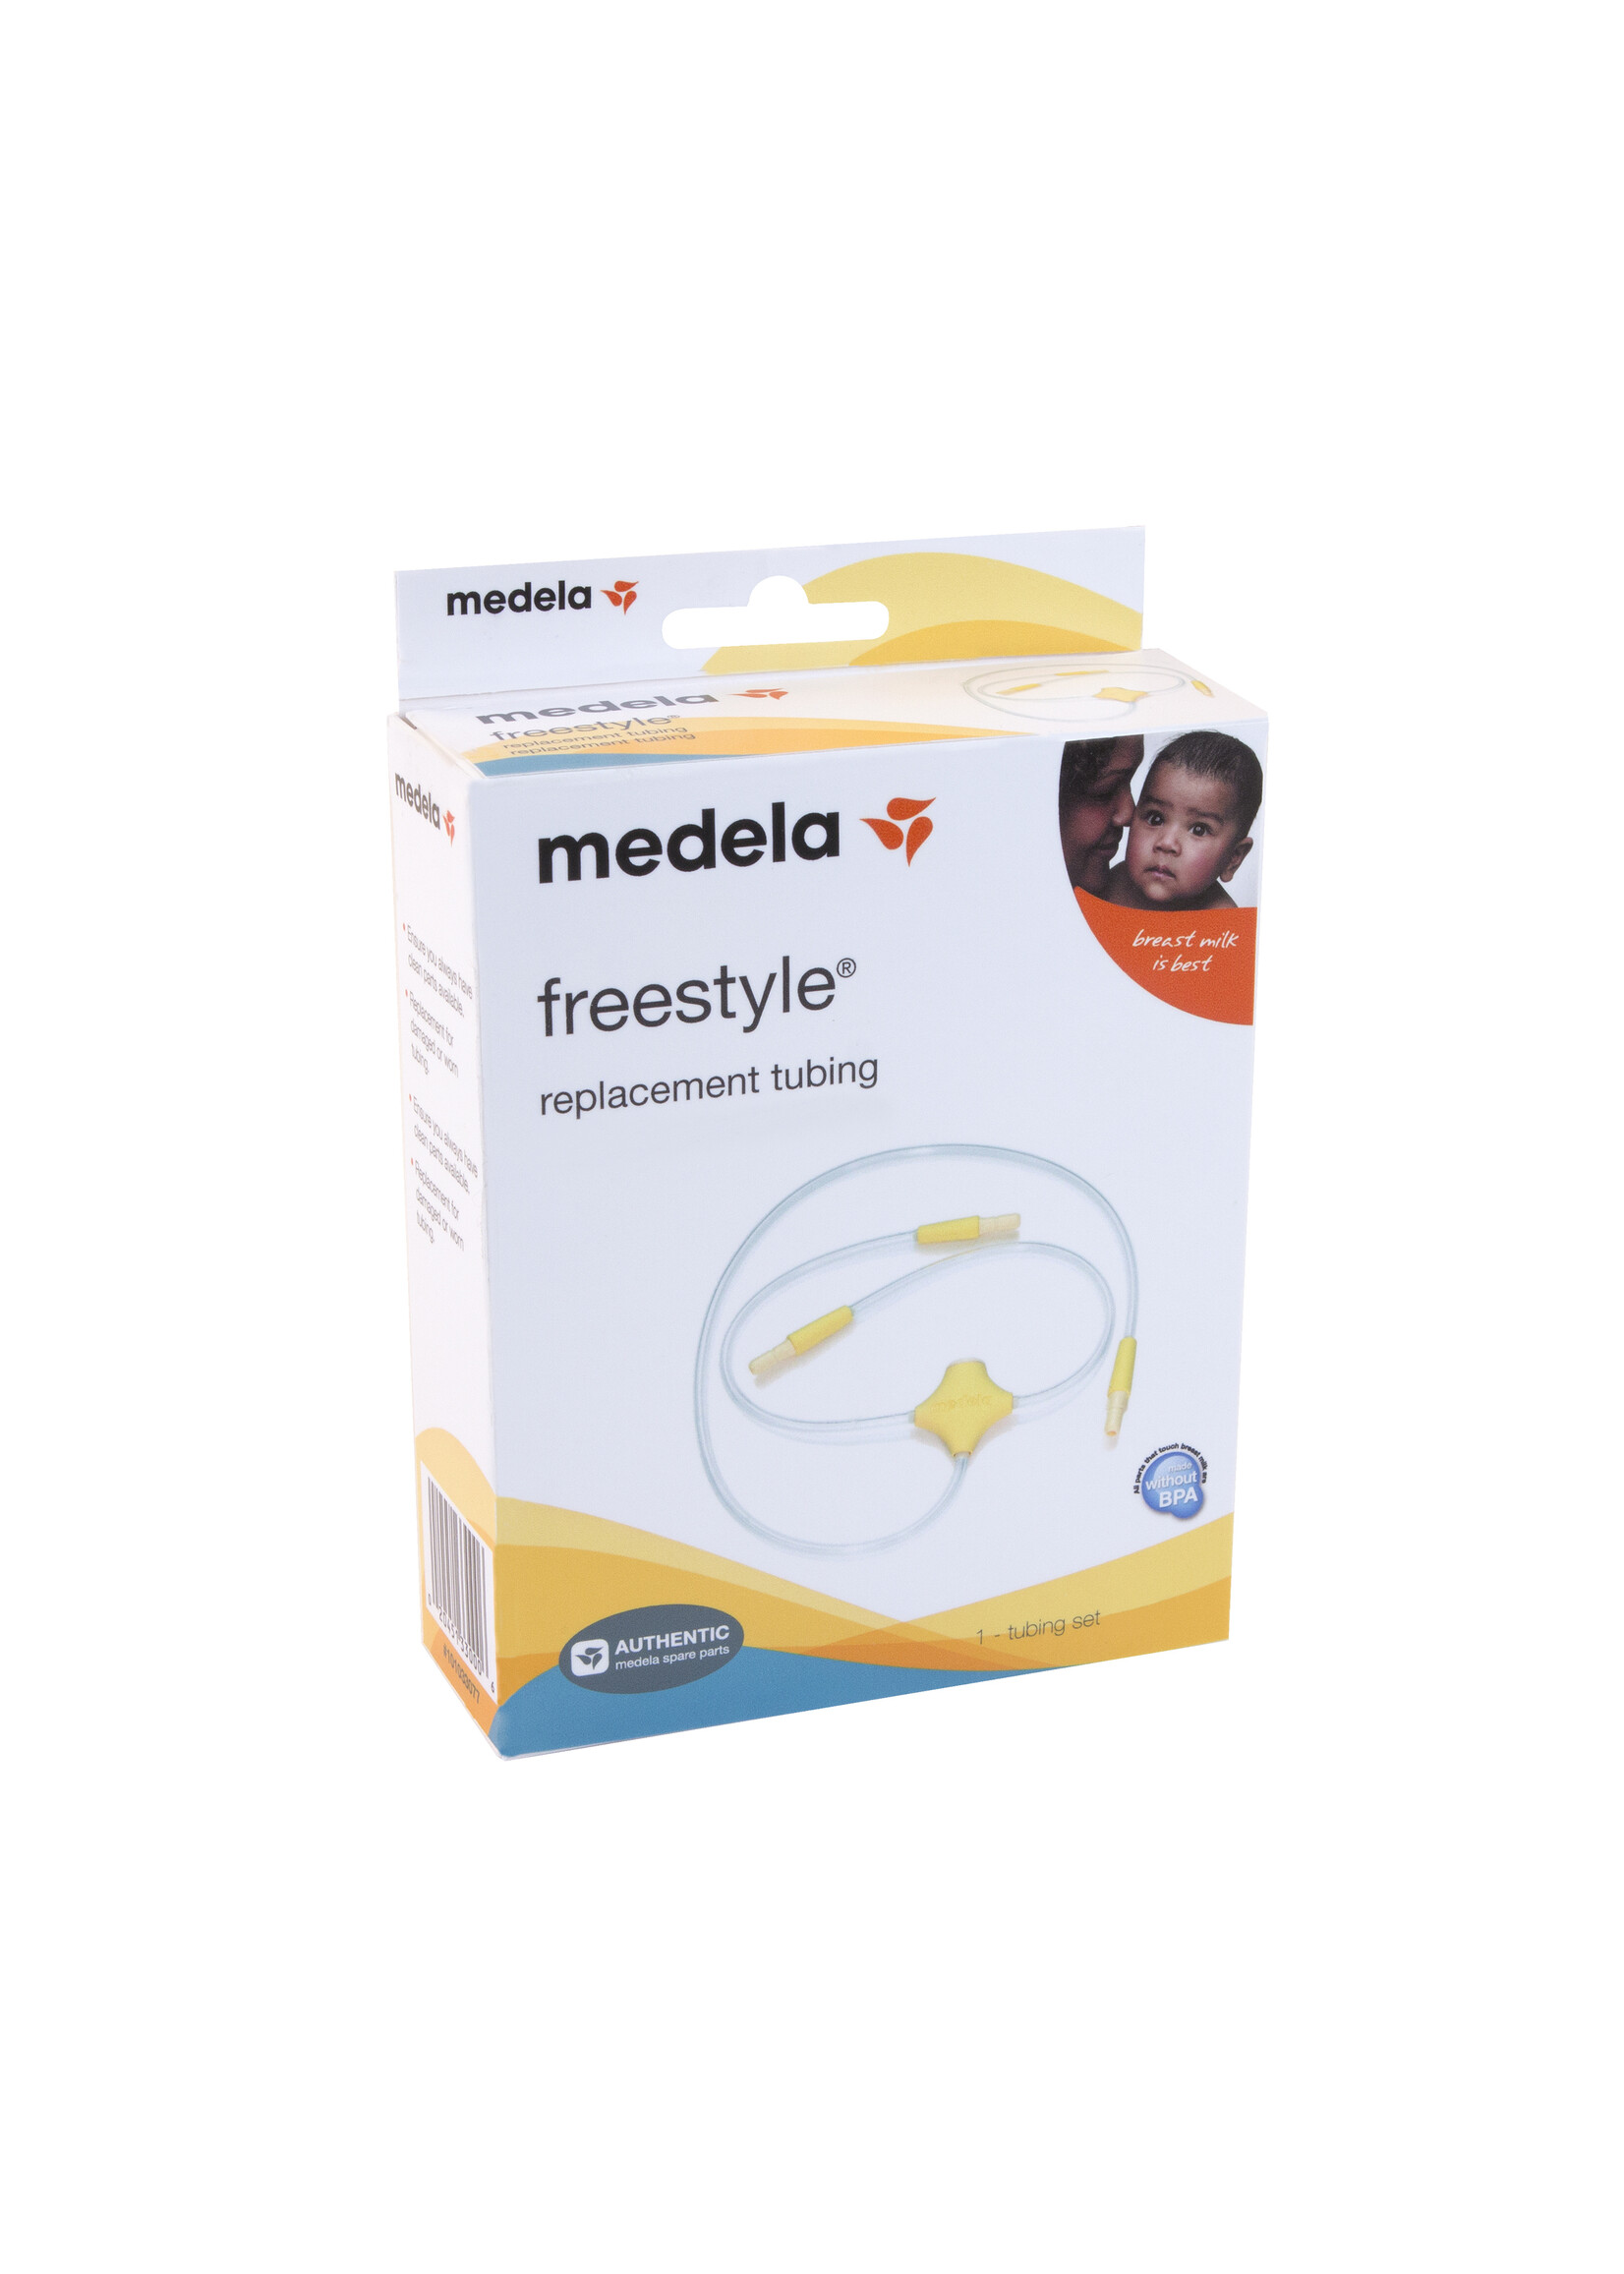 Medela freestyle tubulure - Breastfeeding Boutique